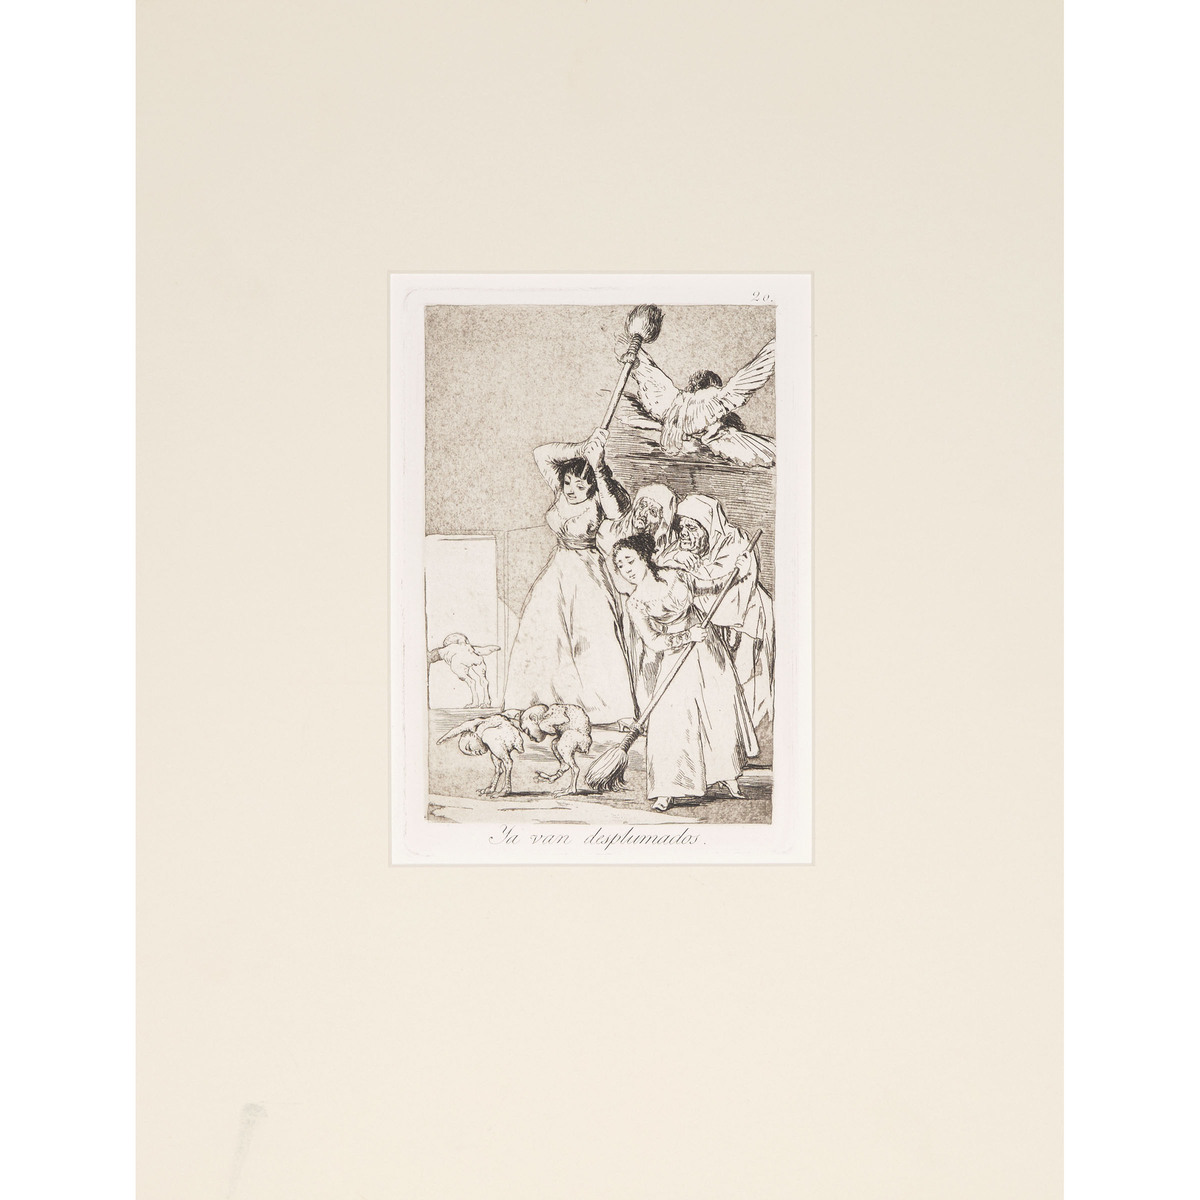 Francisco José de Goya y Lucientes (1746-1828), LOS CAPRICHOS, CA. 1855-1878 [D. 40-111; H. 38-109], - Image 8 of 55